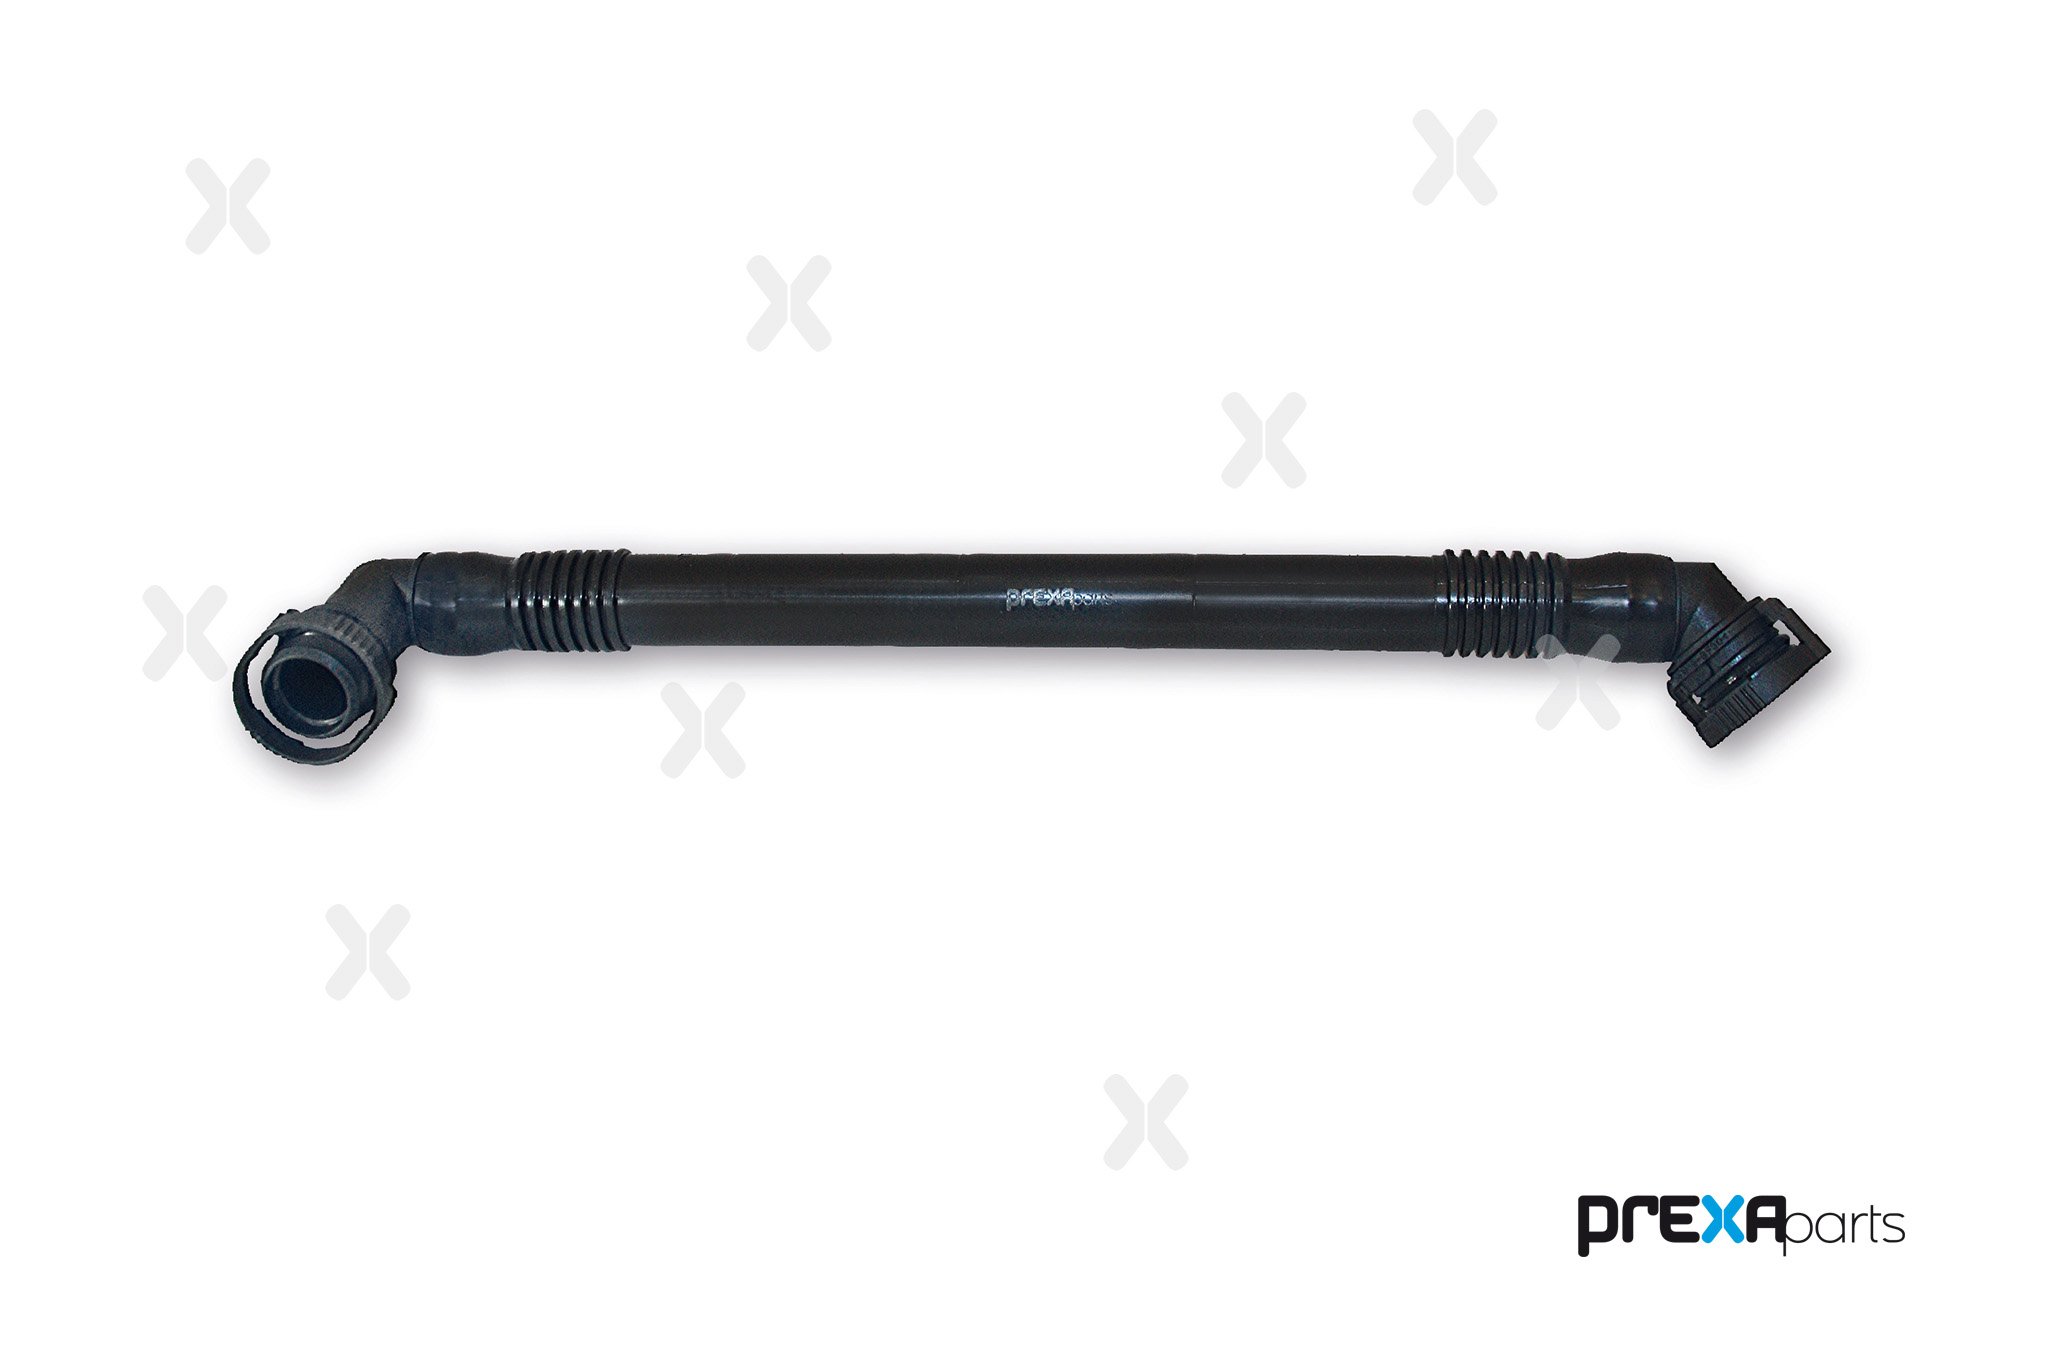 PREXAparts P226173